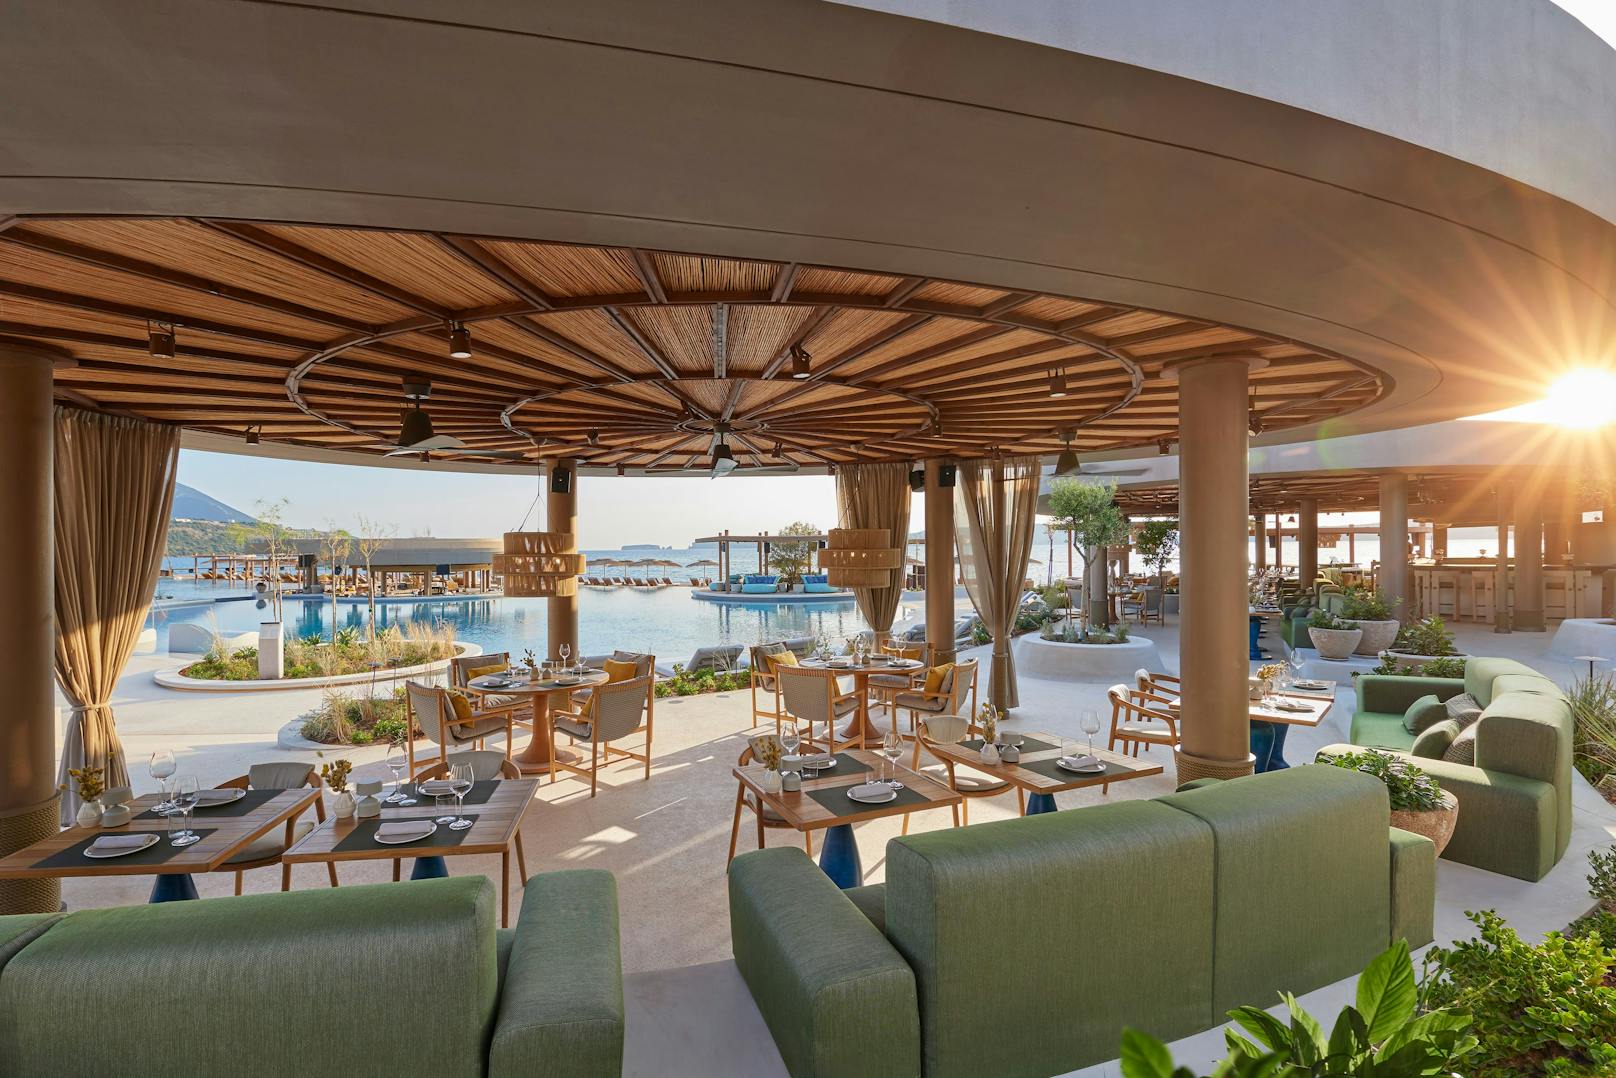 Am Strand findet sich nicht nur eine luftige Strandbar, sondern auch die Pizzeria Sapienza by Daniele Cason sowie das Restaurant Tahir, das mit libanesischen Köstlichkeiten aufwartet.